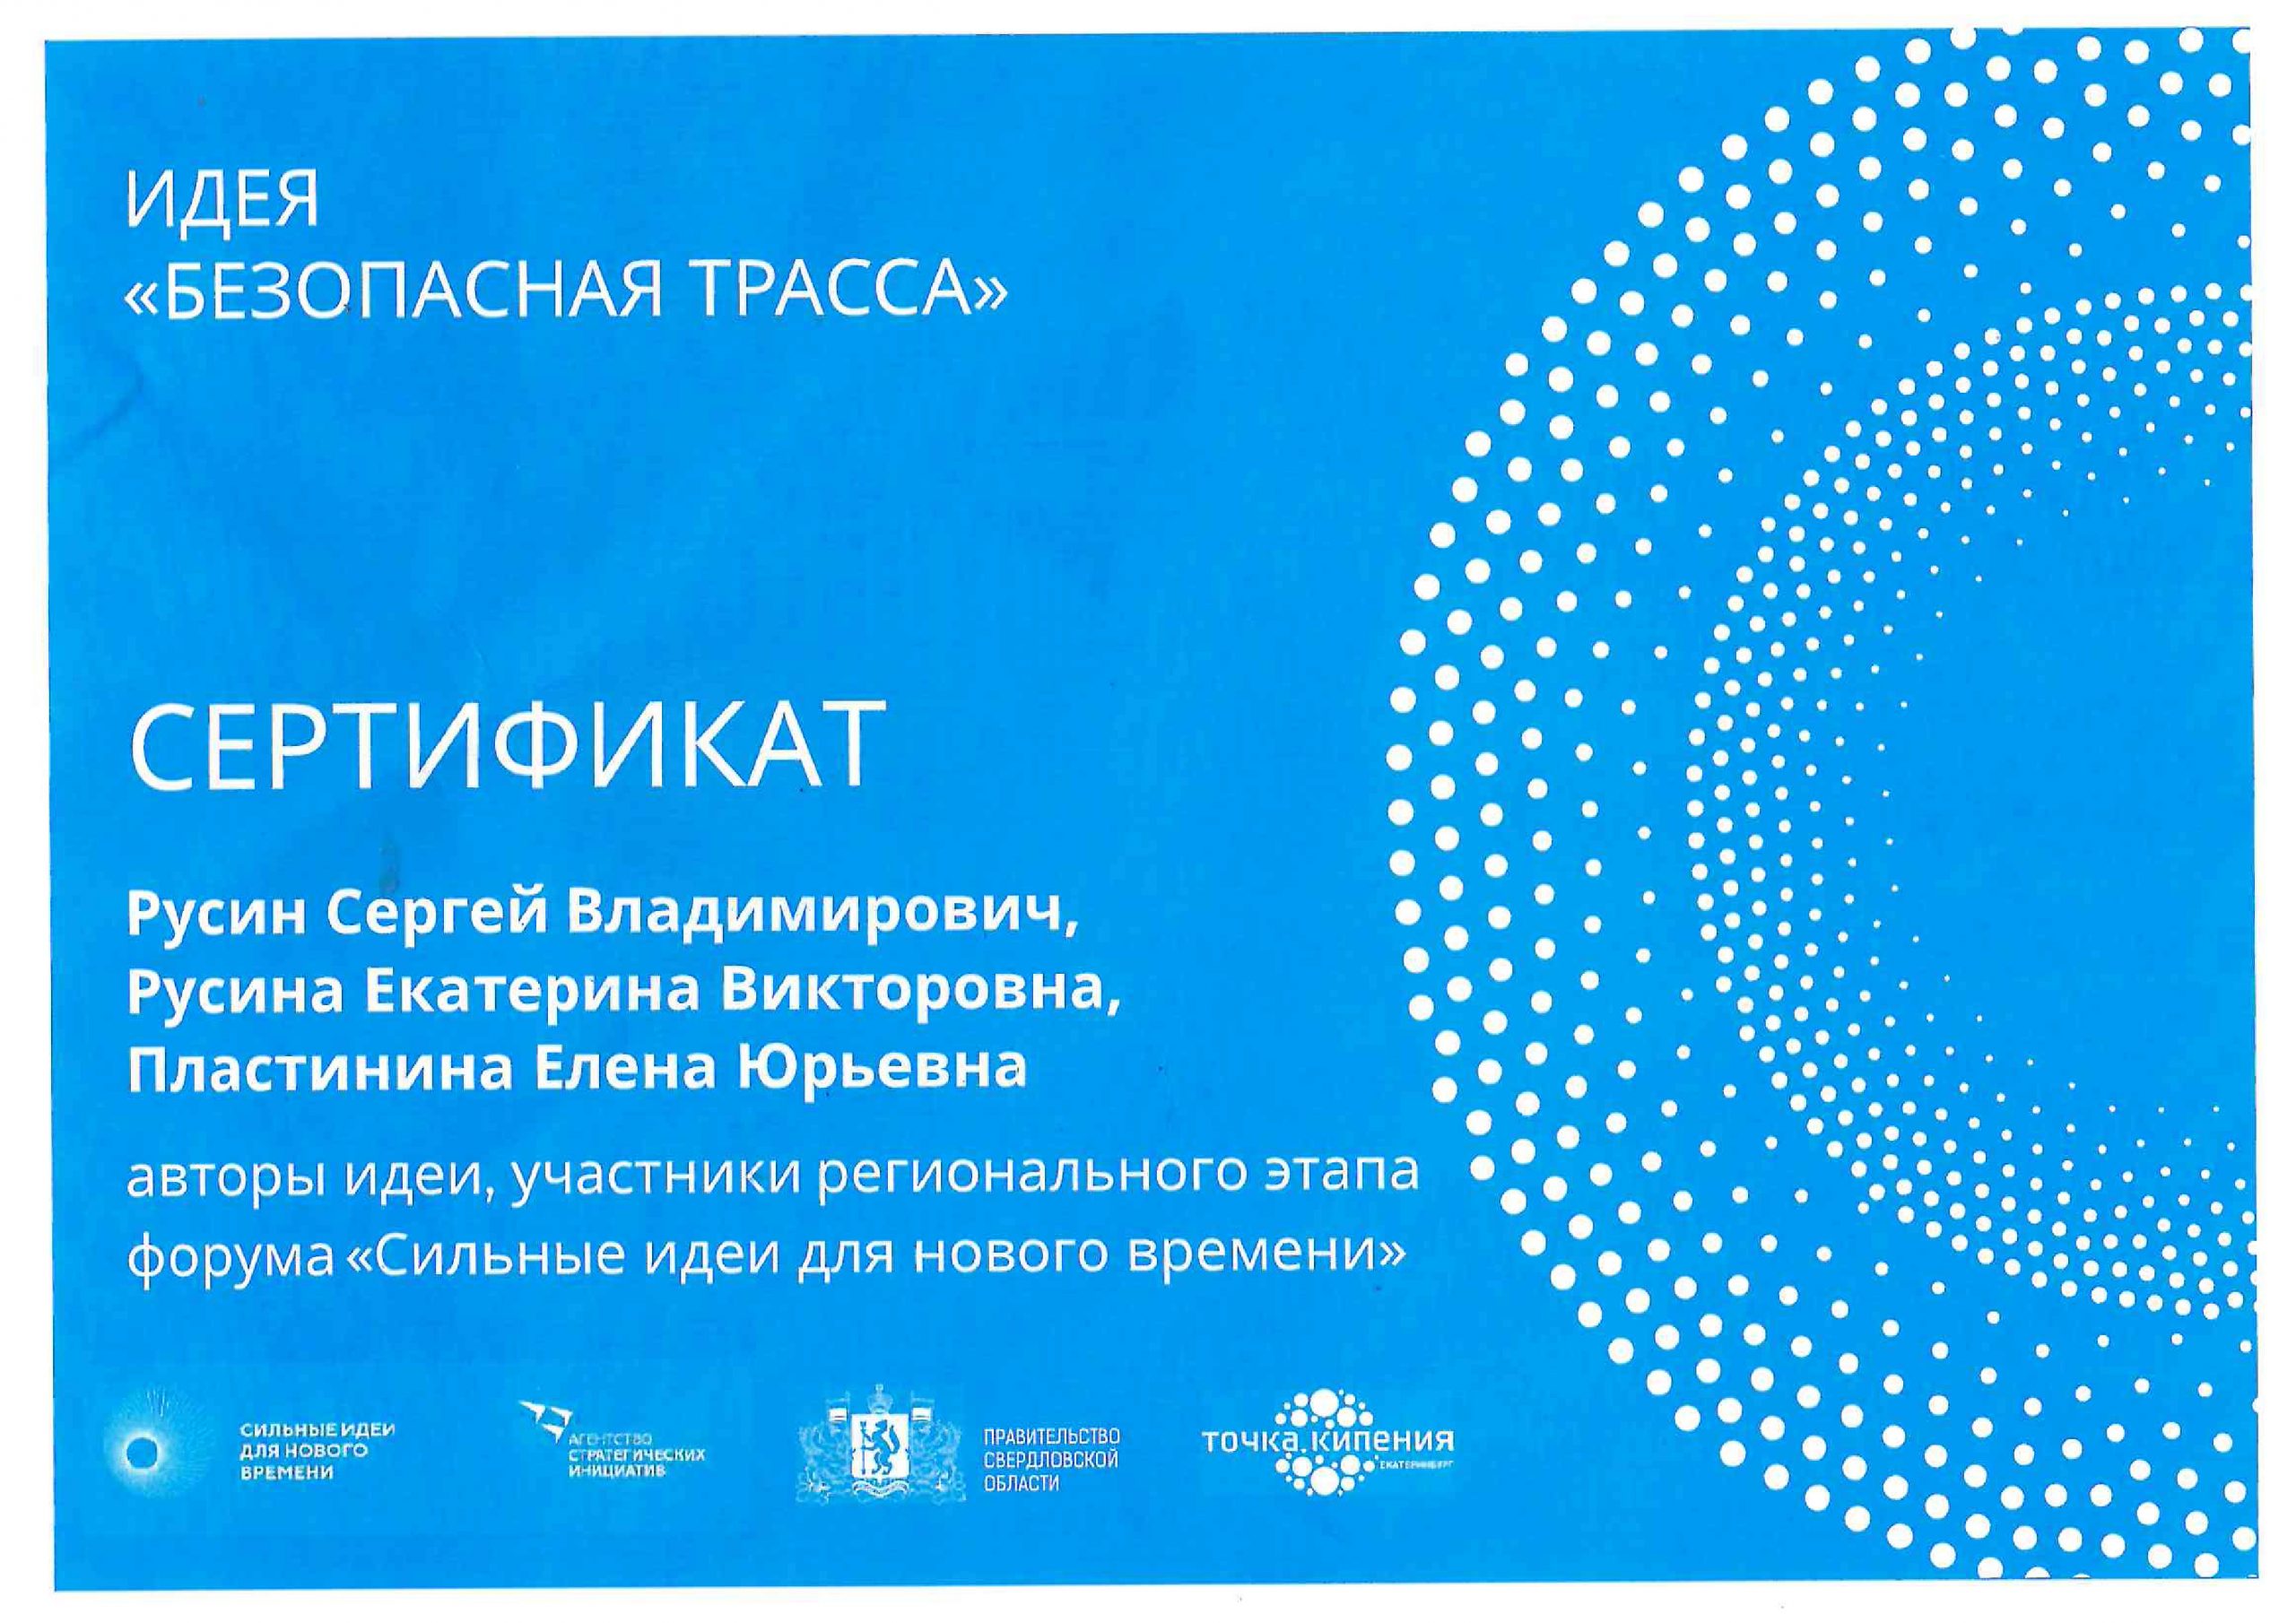 Сертификат участника форума "Сильные идеи нового времени"